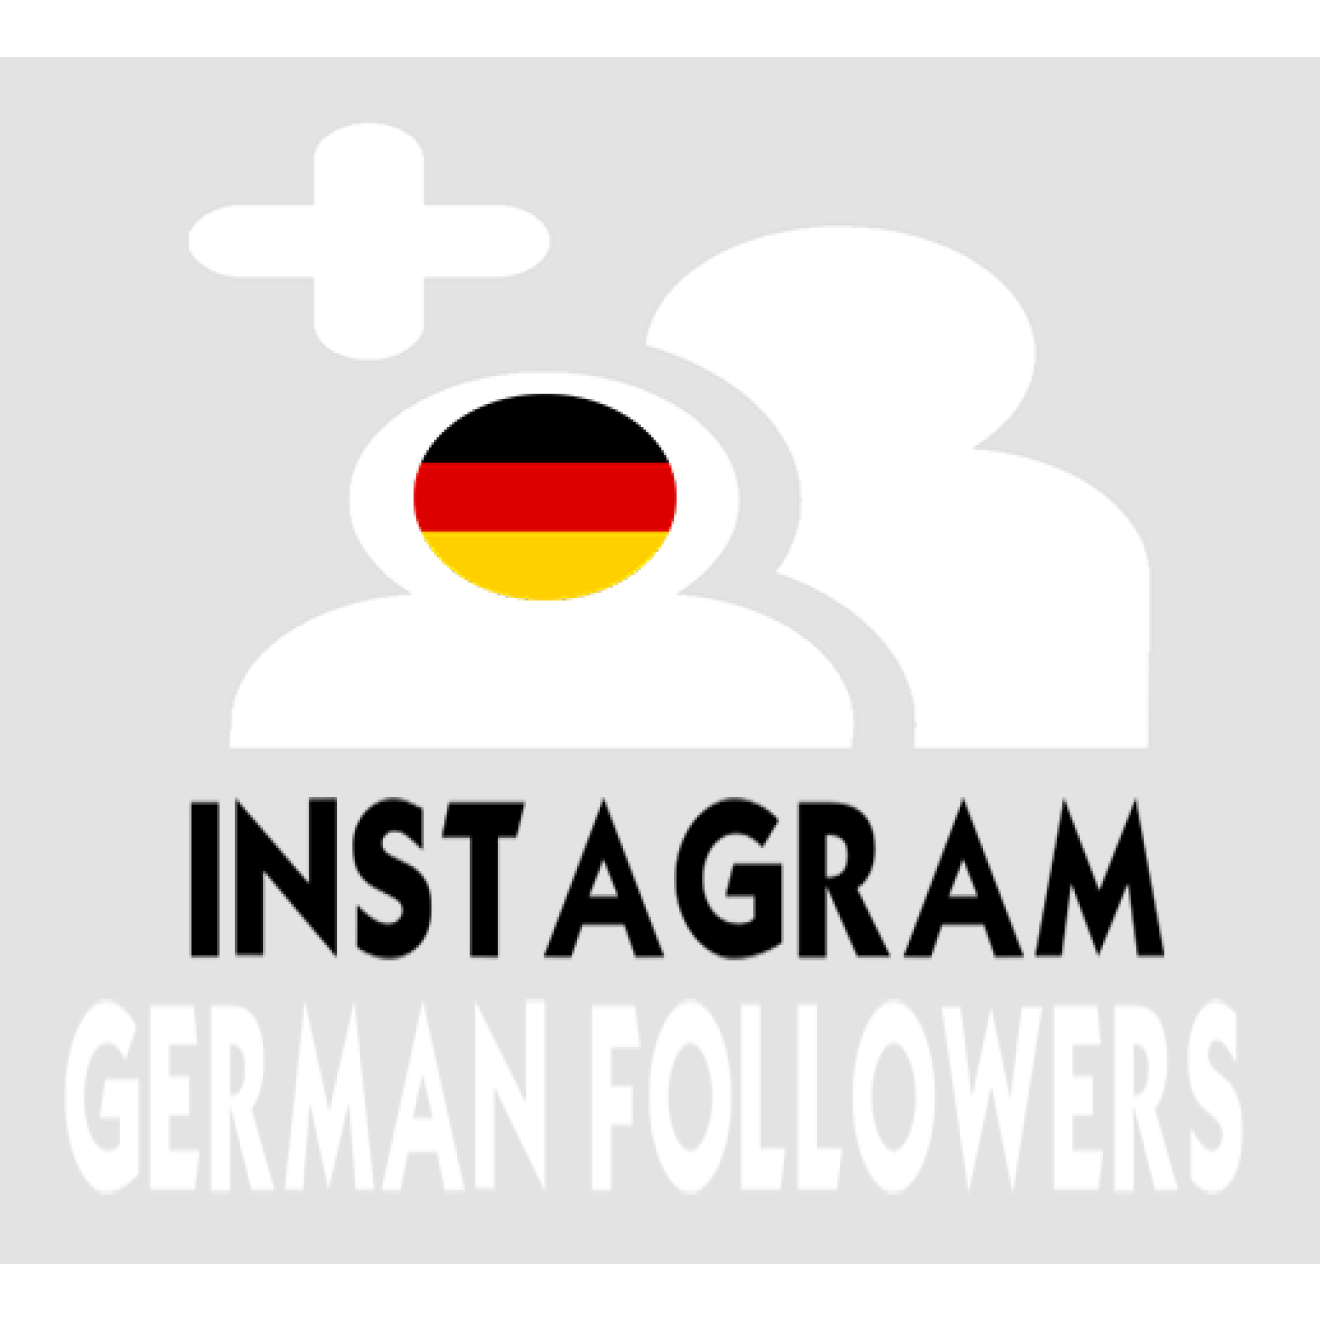 50 Deutsche Instagram Followers / Abonnenten für Dich